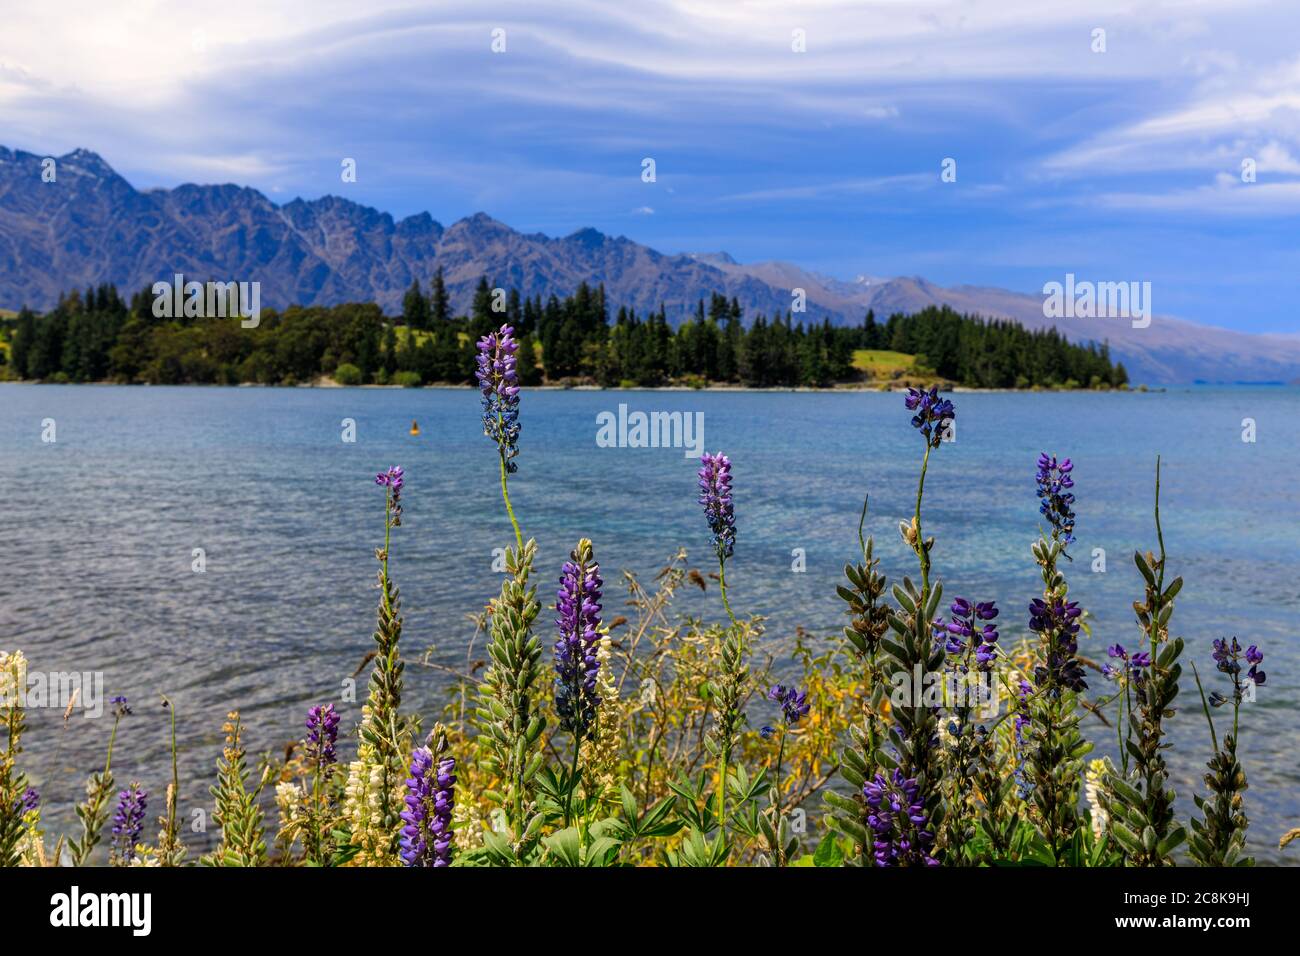 Fleurs sauvages sur les rives du lac Wakatipu dans le parc de la ville de Queenstown avec les montagnes autour. Queenstown, Nouvelle-Zélande. Banque D'Images